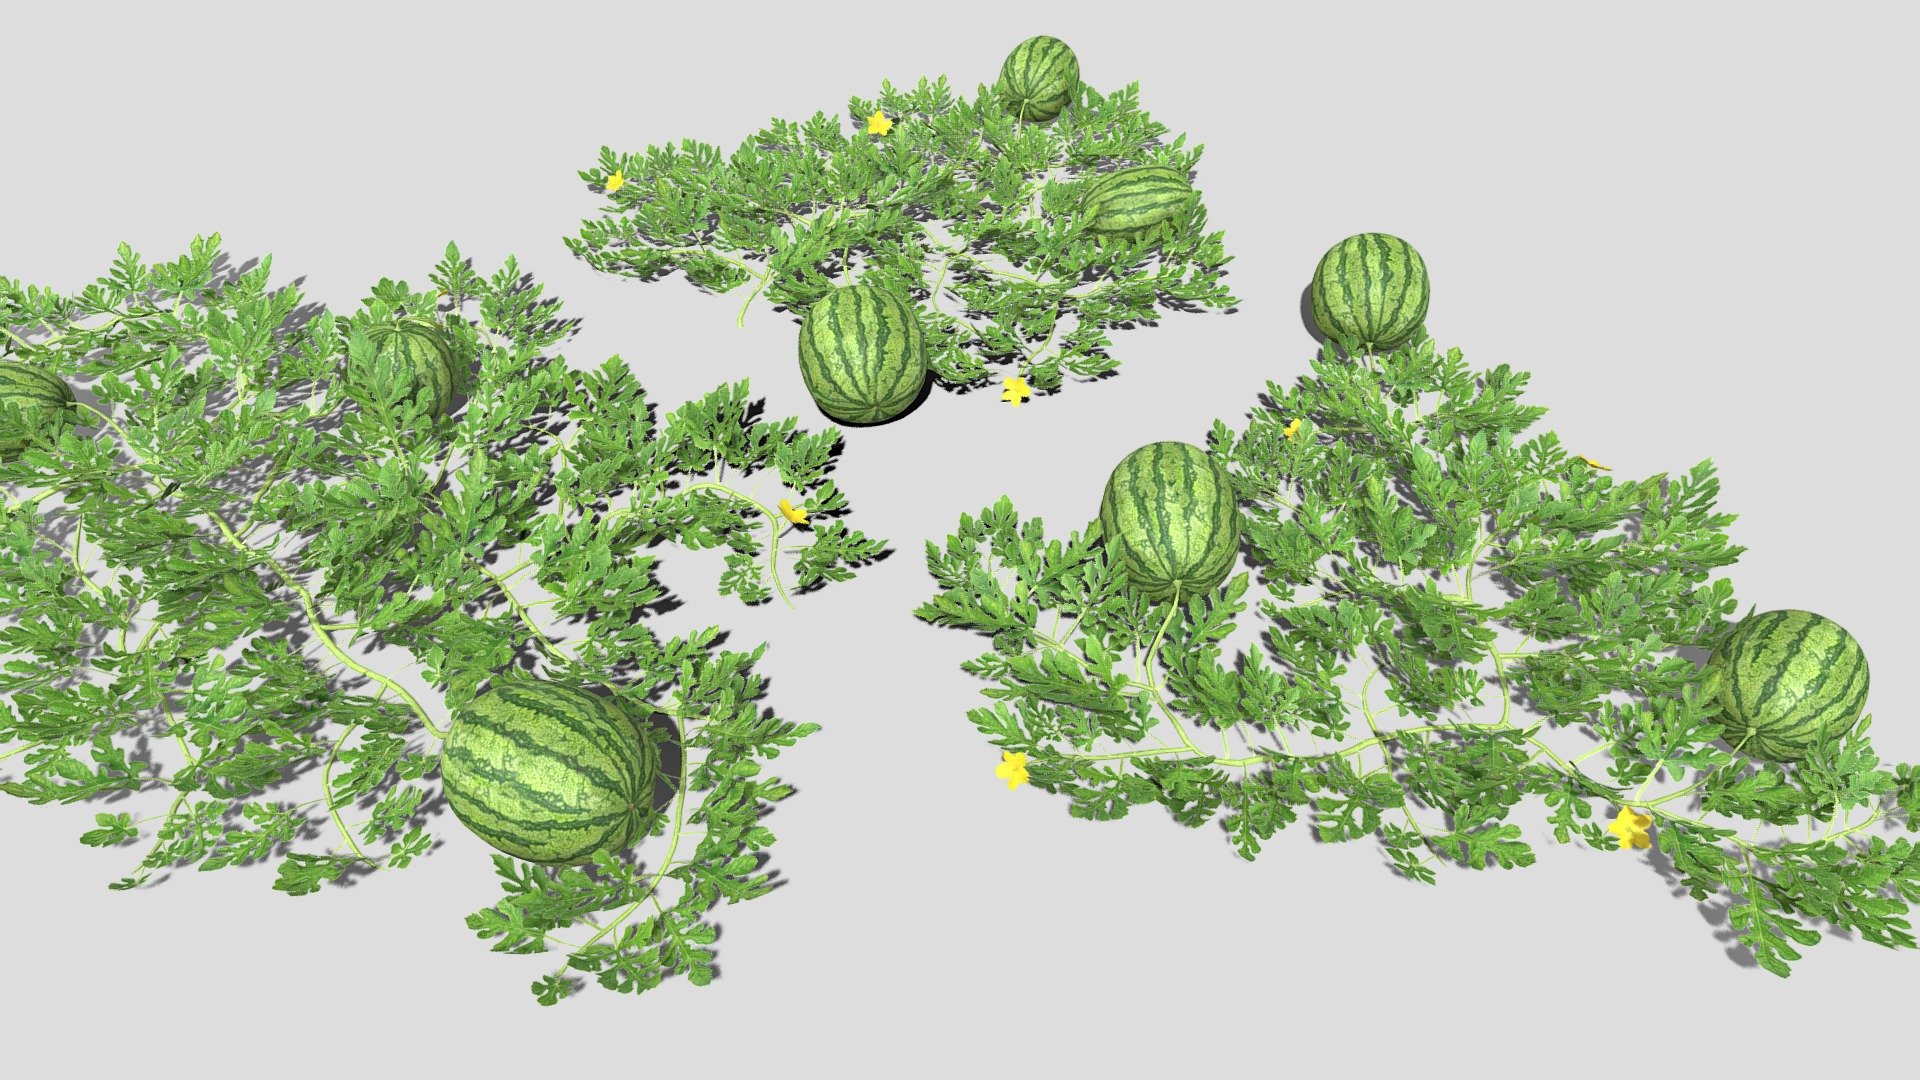 3 low poly watermelon patches - Watermelon plantation - 3D model by Buncic 3d model